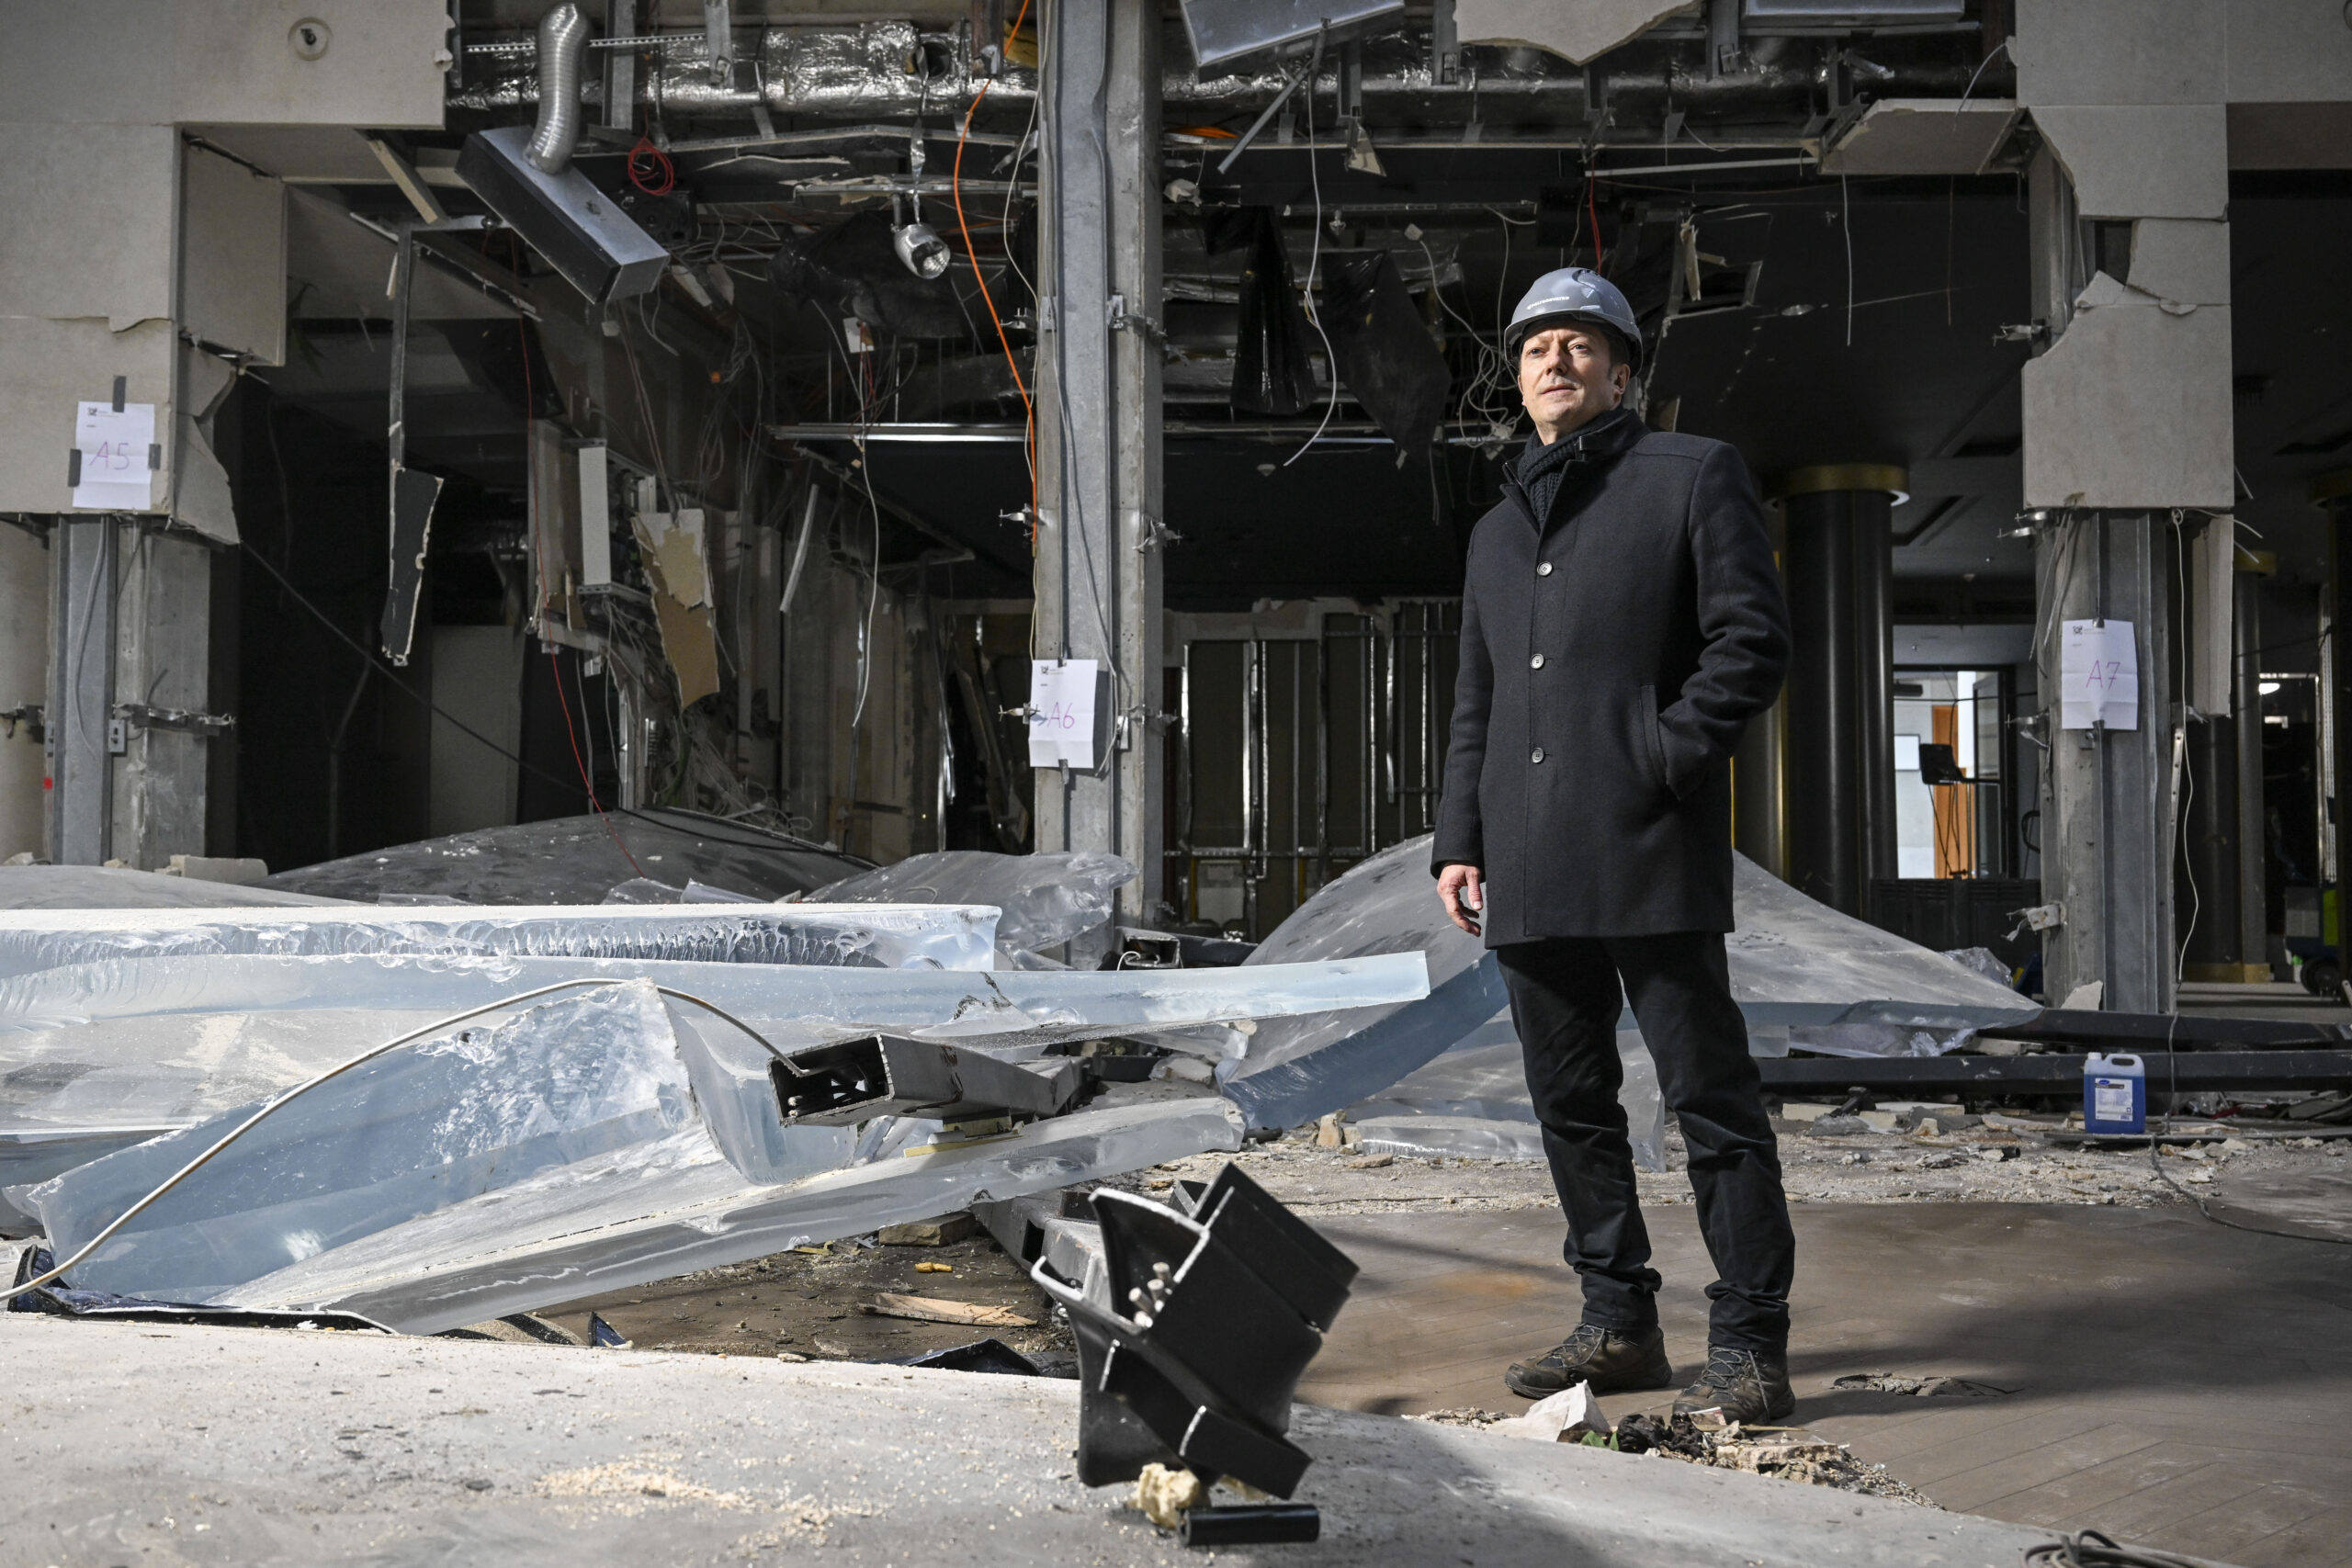 Fabian Hellbusch, Leiter Marketing und Kommunikation bei Union Investment Real Estate GmbH, steht nach dem Platzen des Großaquariums am zerstörten Zylinder des Aquadoms und Resten der Acrylverkleidung.